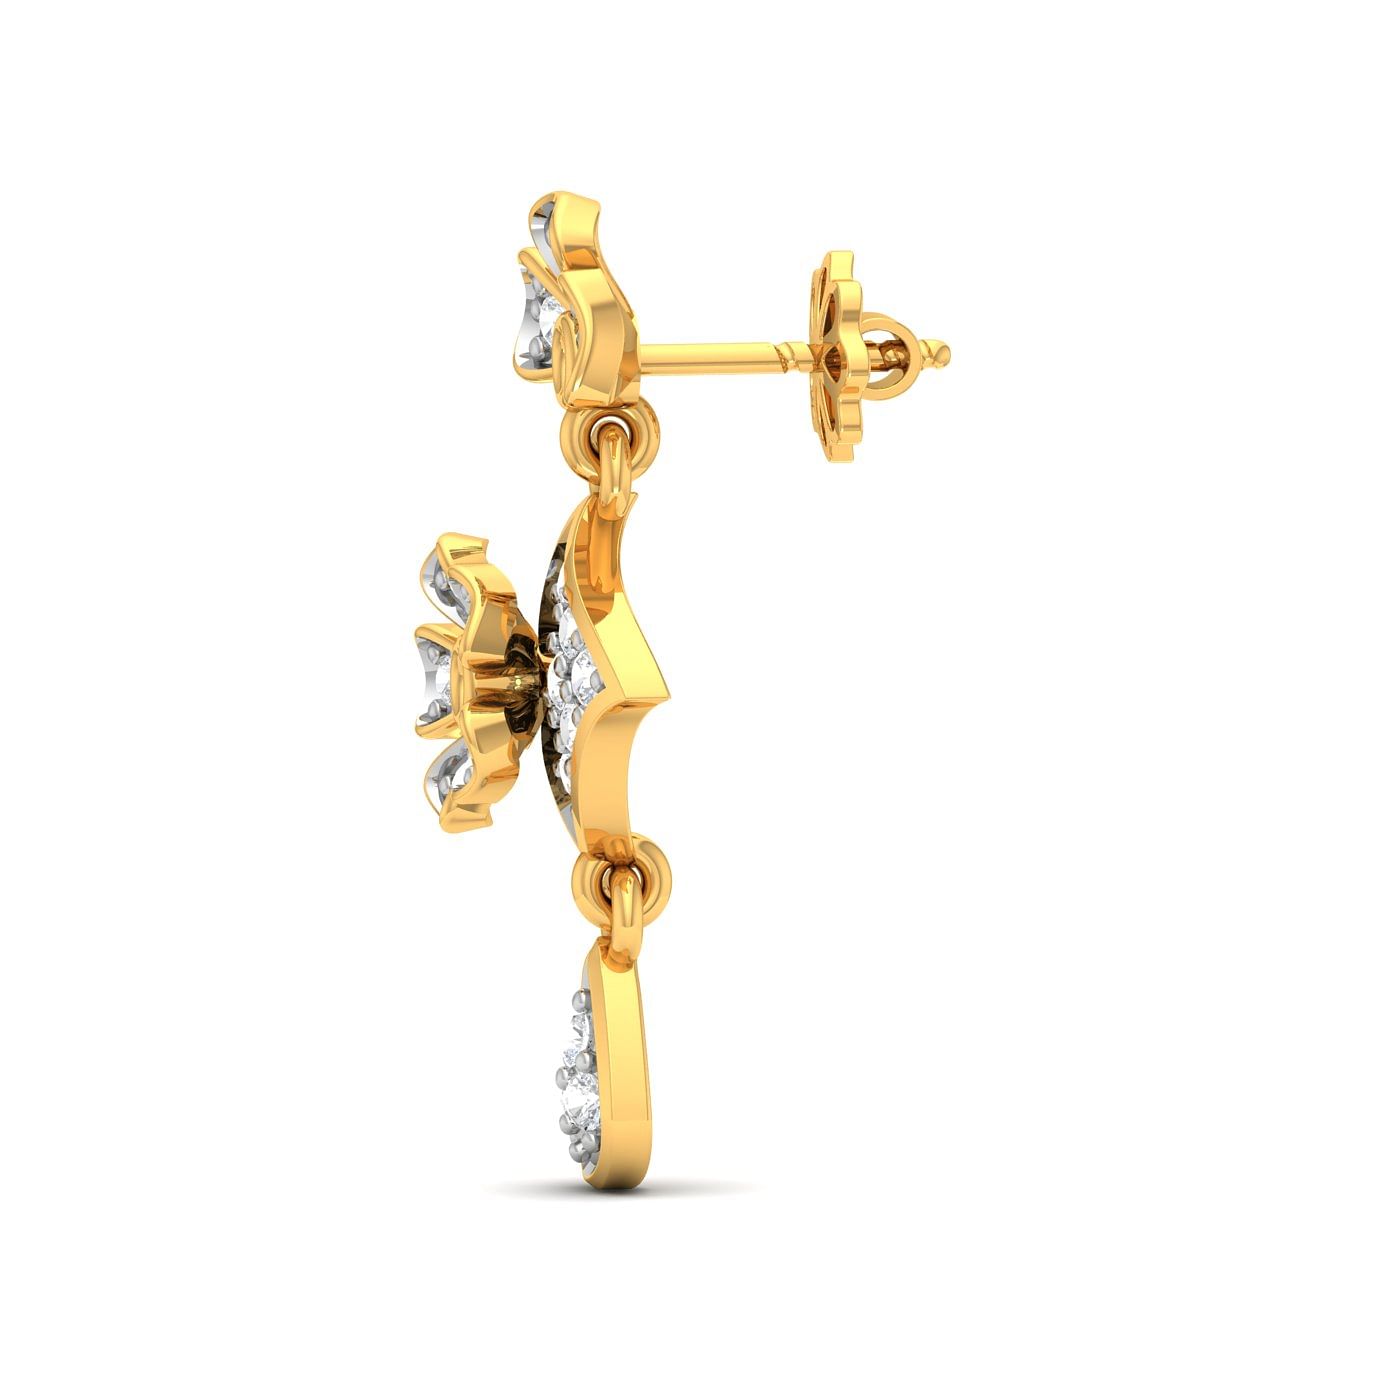 Flower style drop diamond earring set in yellow gold